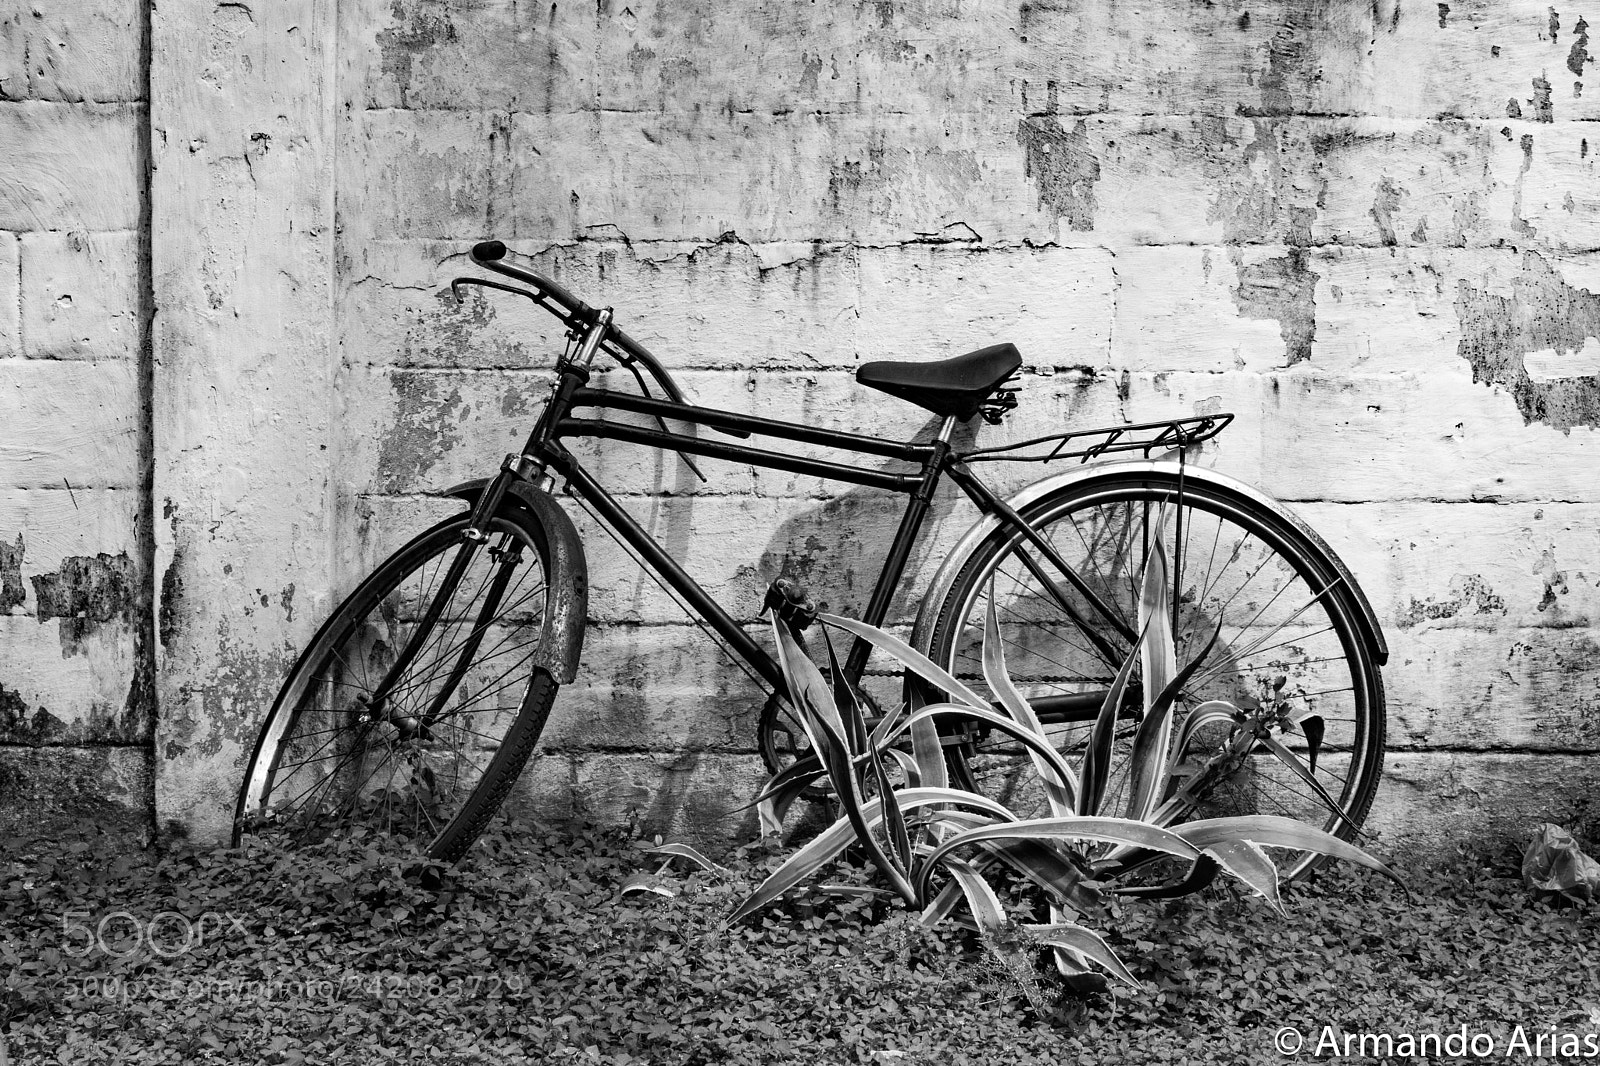 Nikon D5300 sample photo. Bicicleta enraizada photography